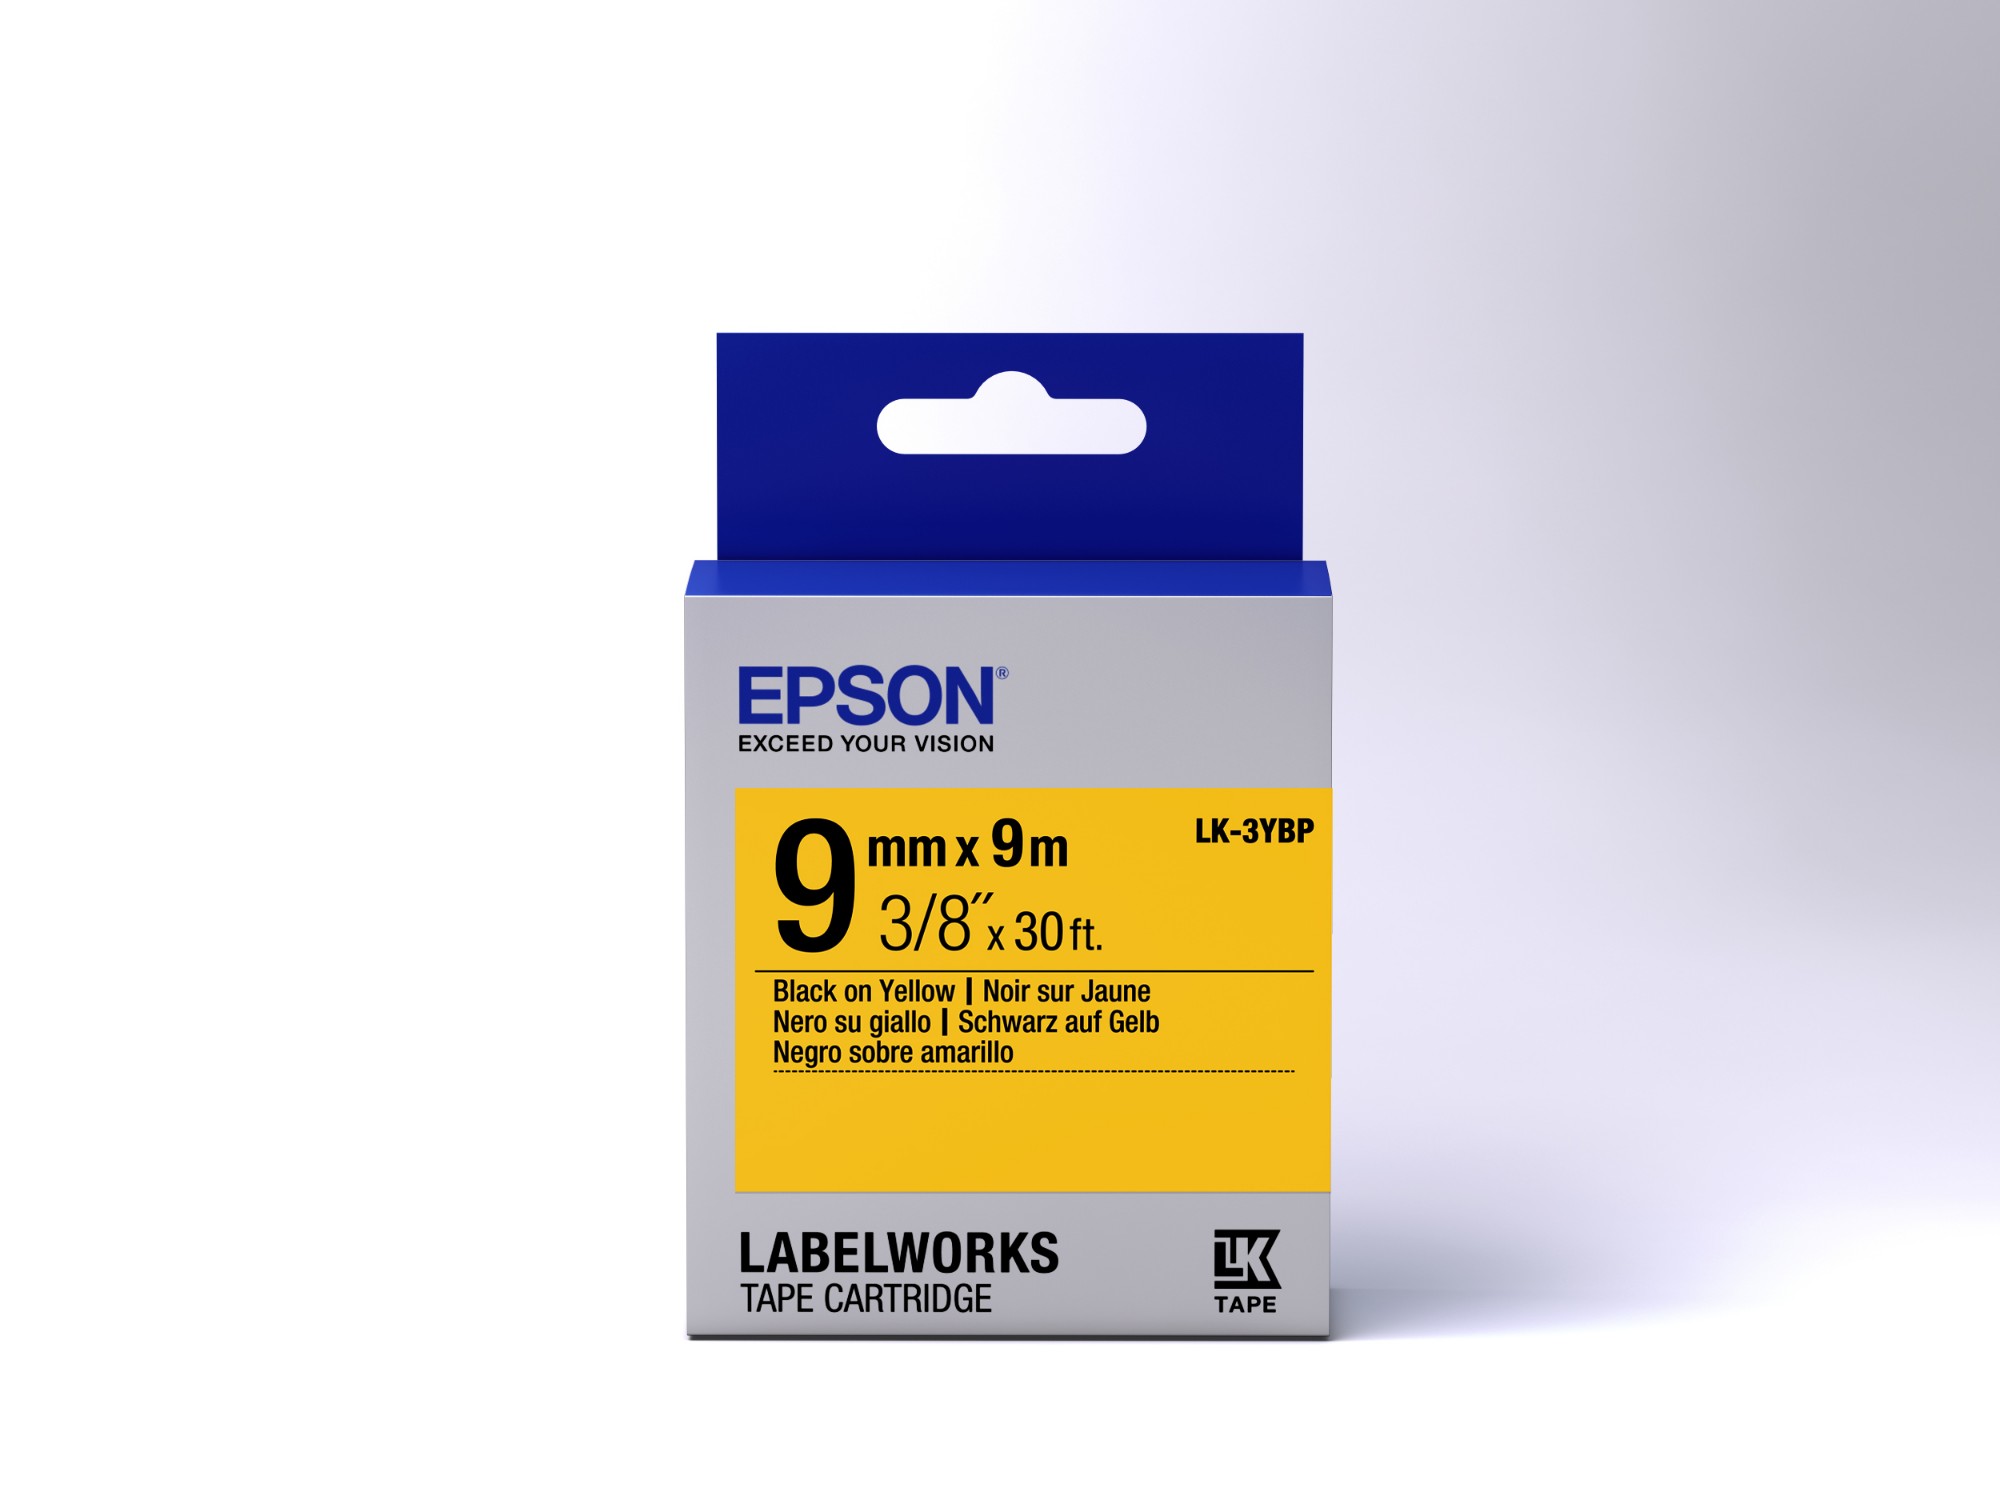 Epson etikettkassett pastell – LK-3YBP pastell svart/gul 9/9